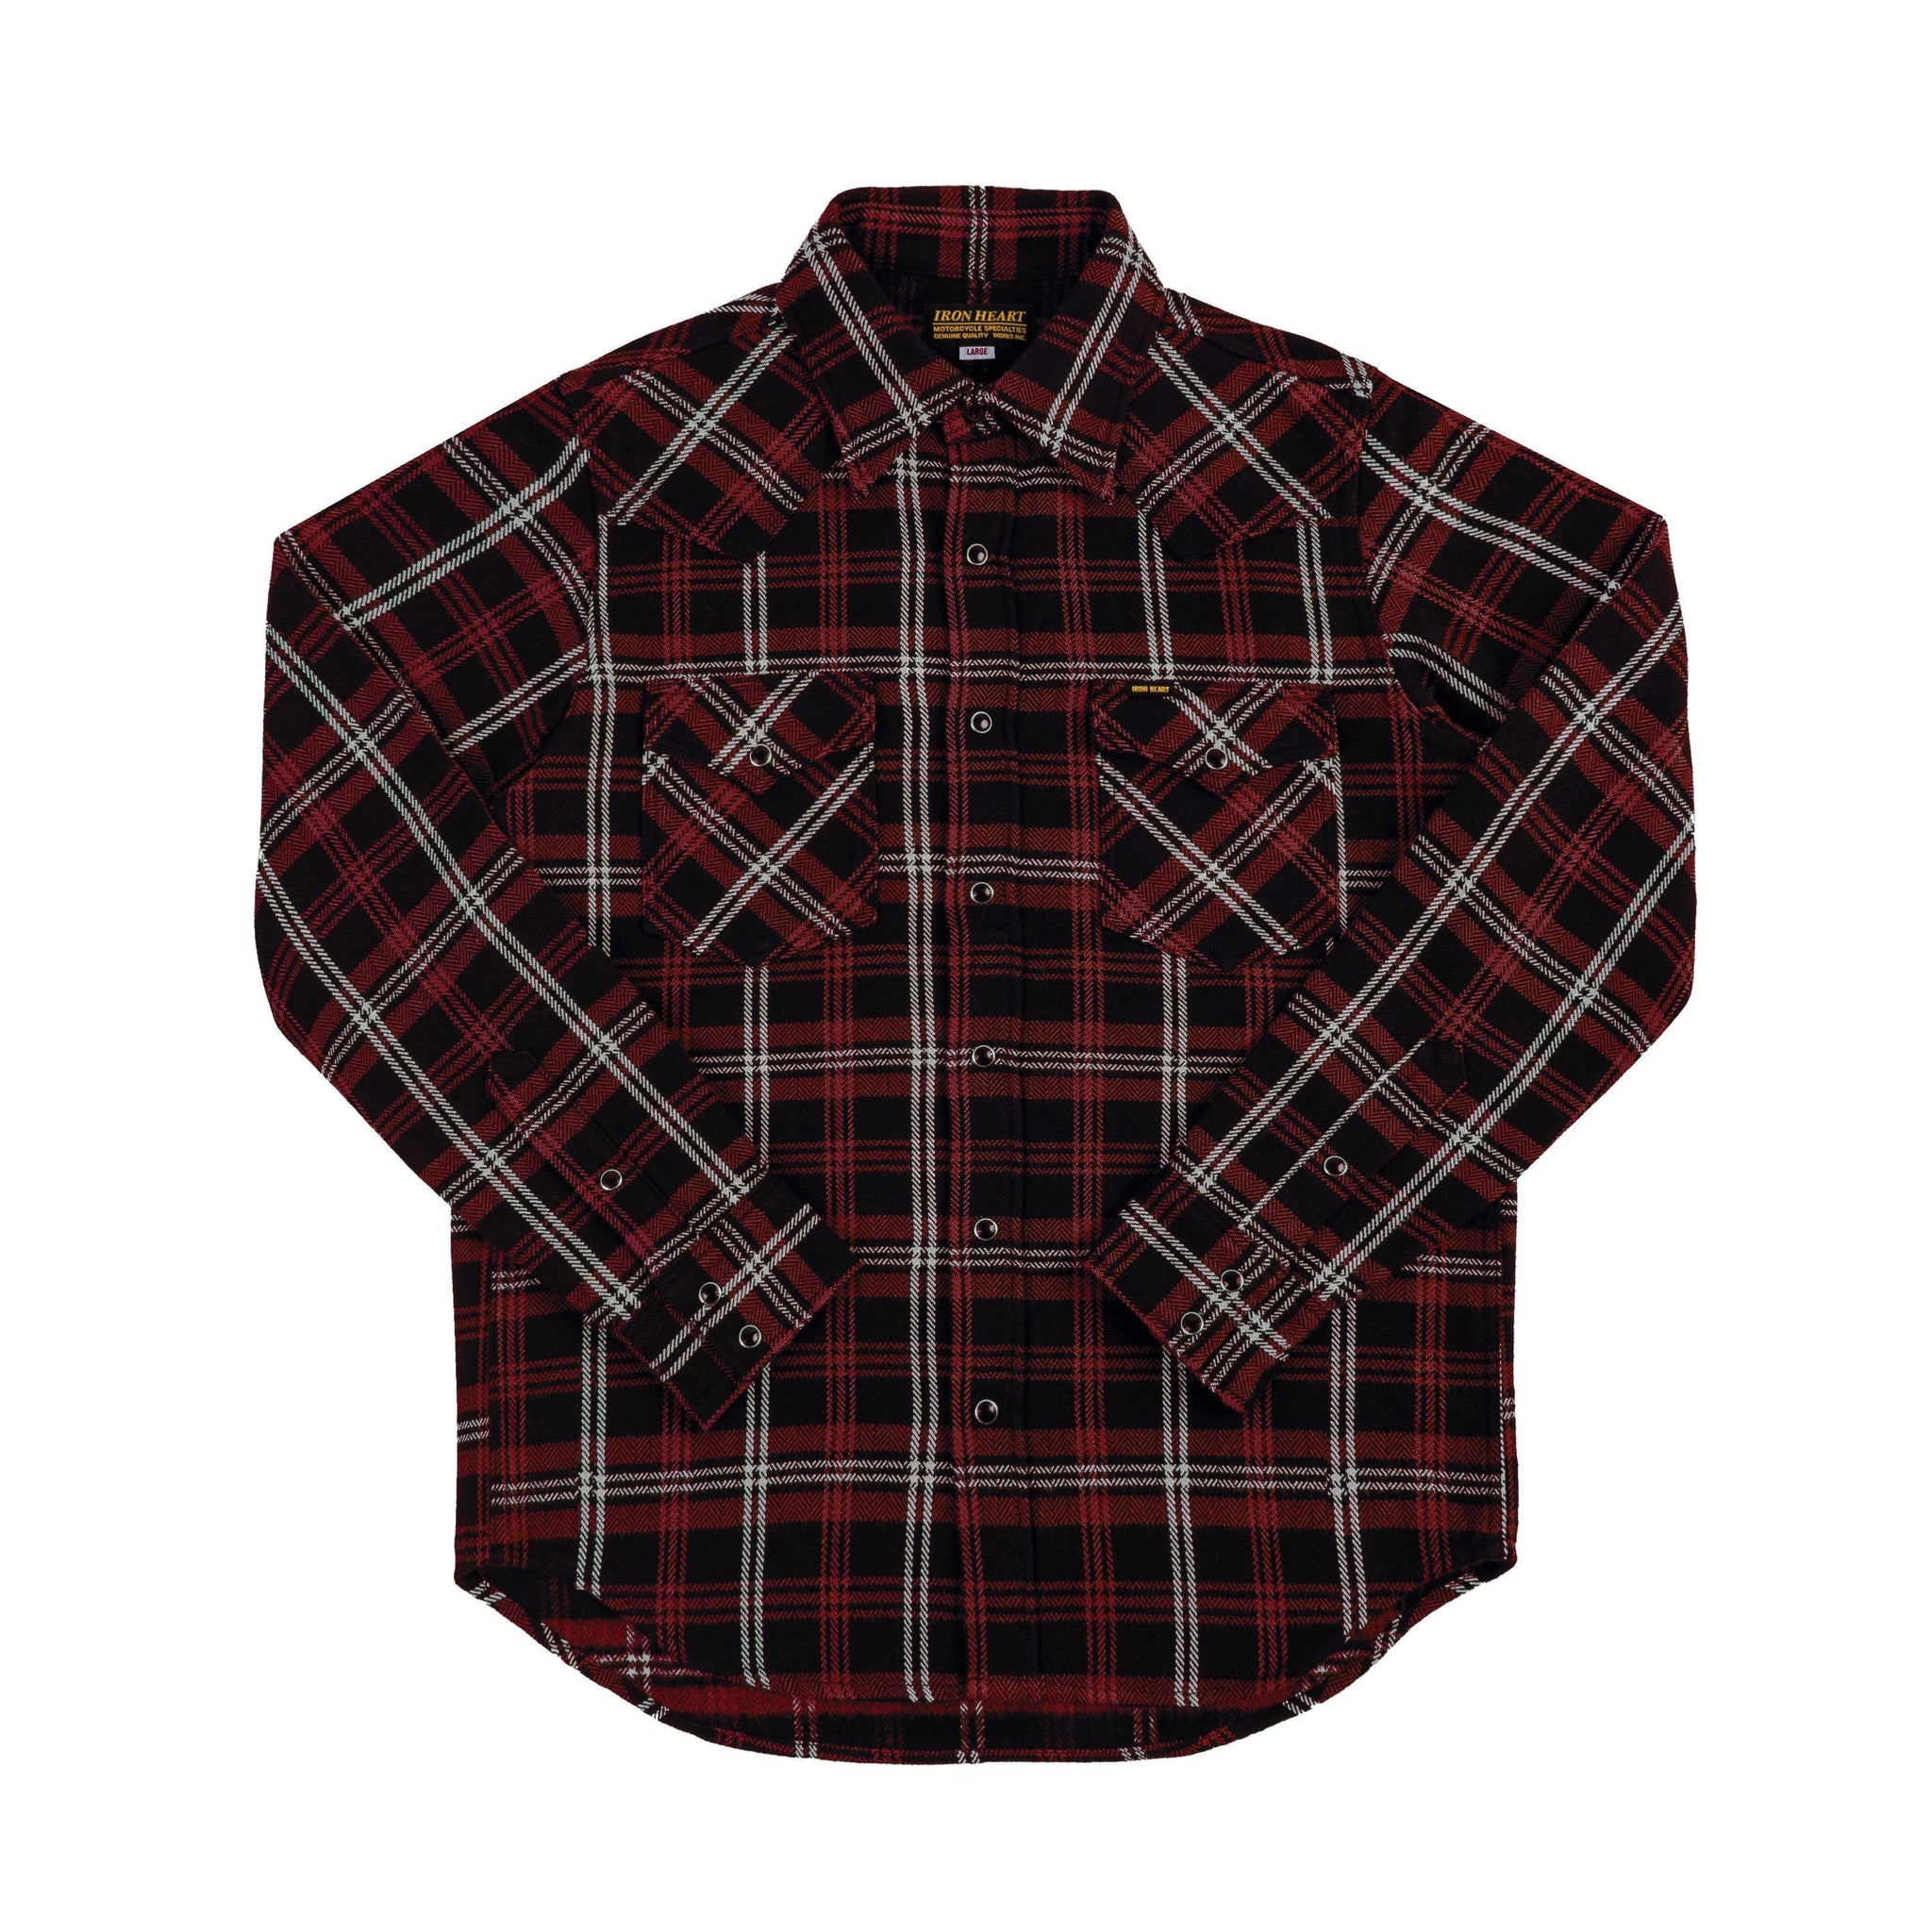 IHSH-IHG-BLK - 12oz Slubby Heavy Flannel Check Western Shirt - Black (Collaboration)